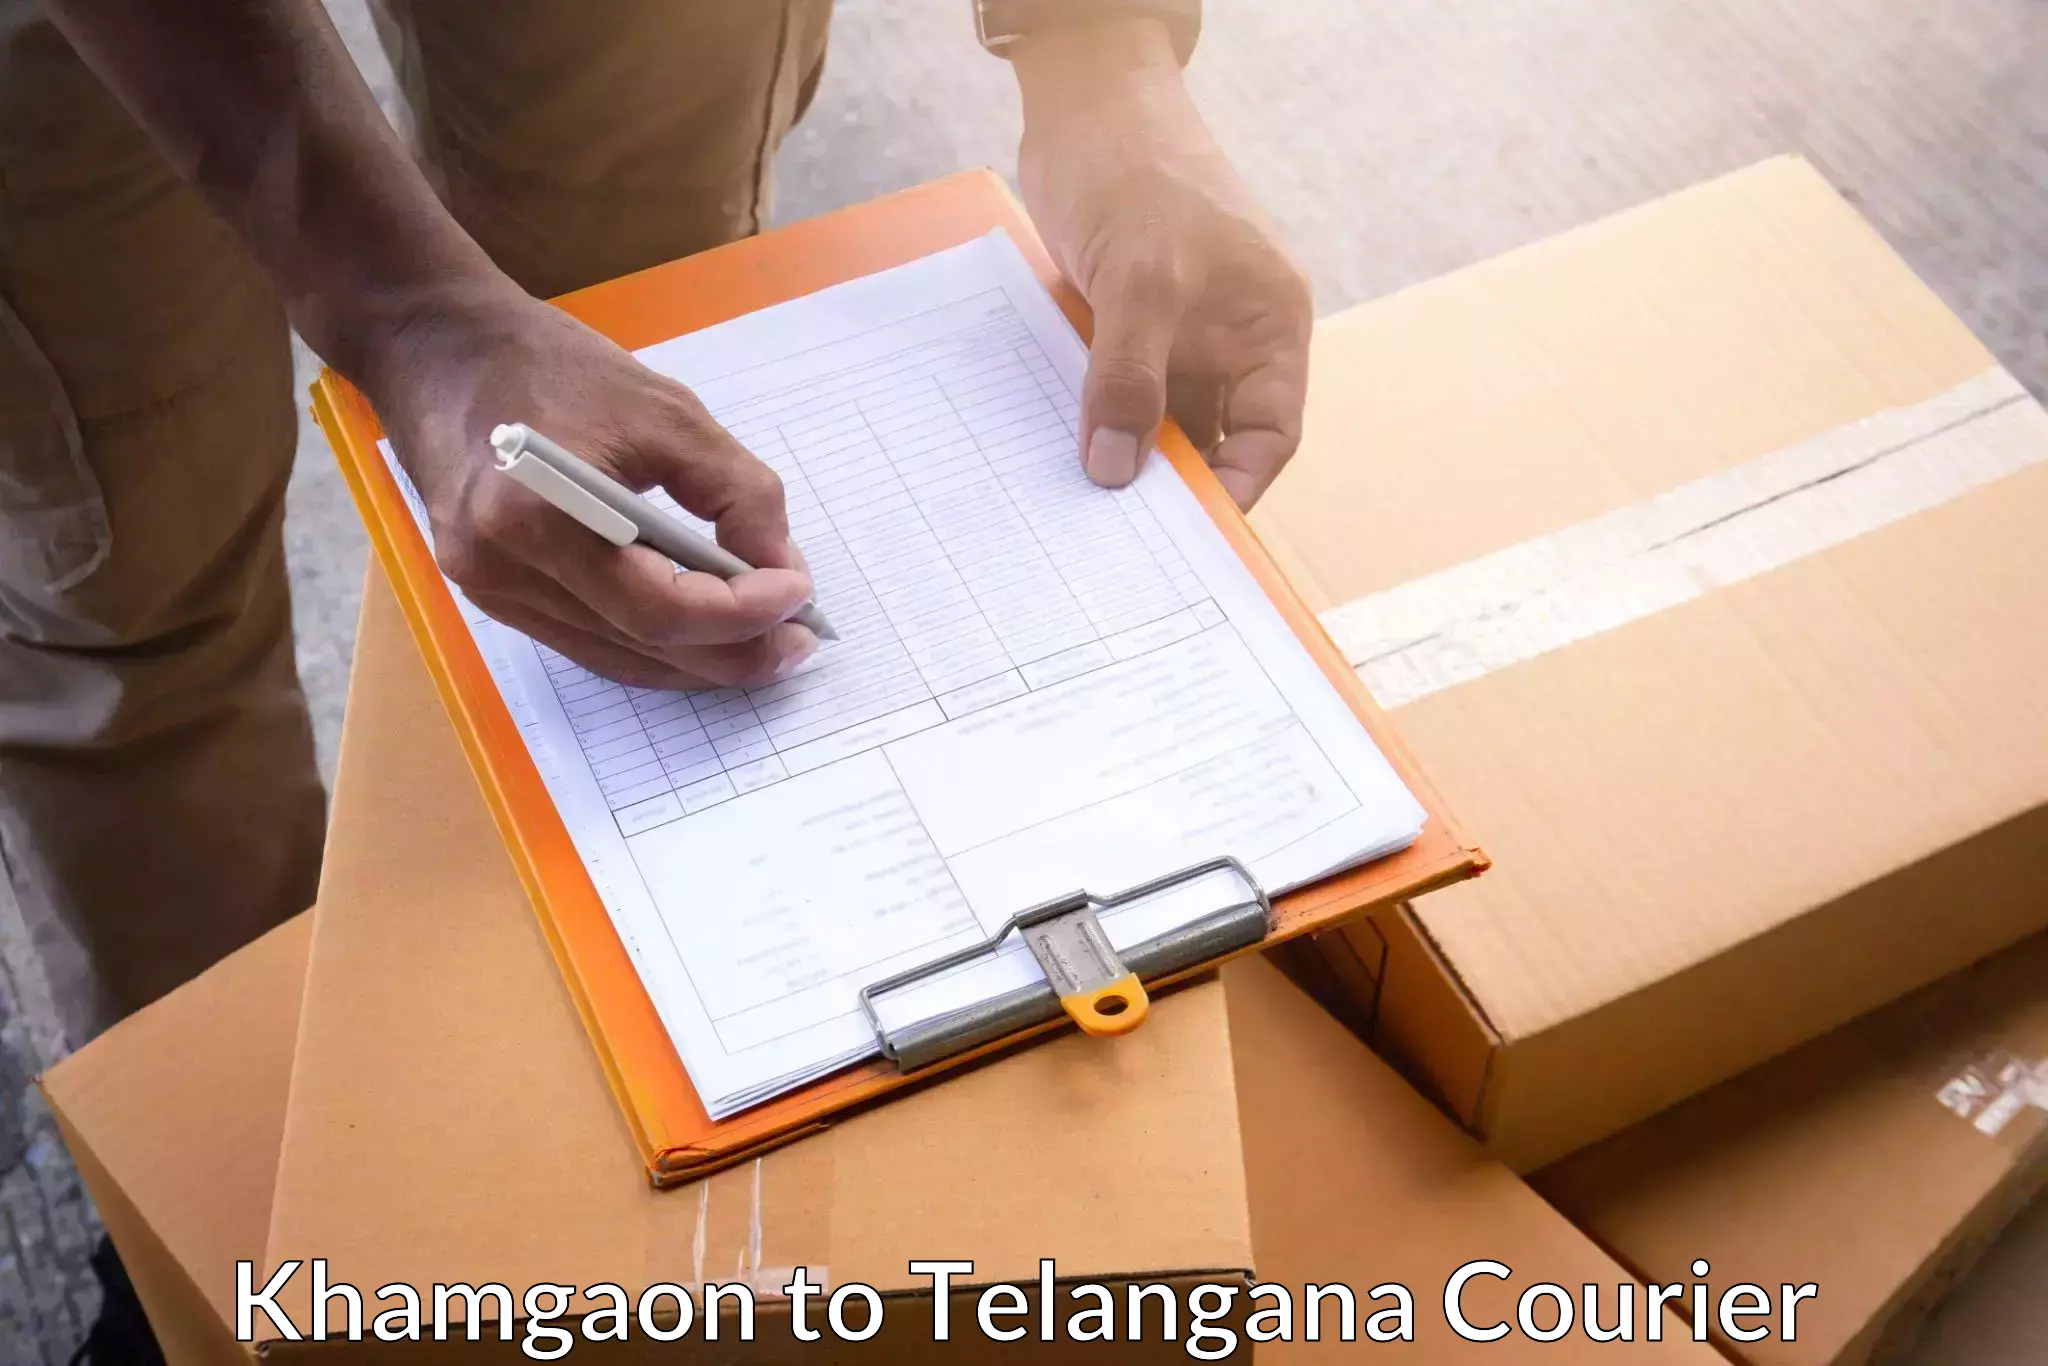 Full-service courier options Khamgaon to Telangana